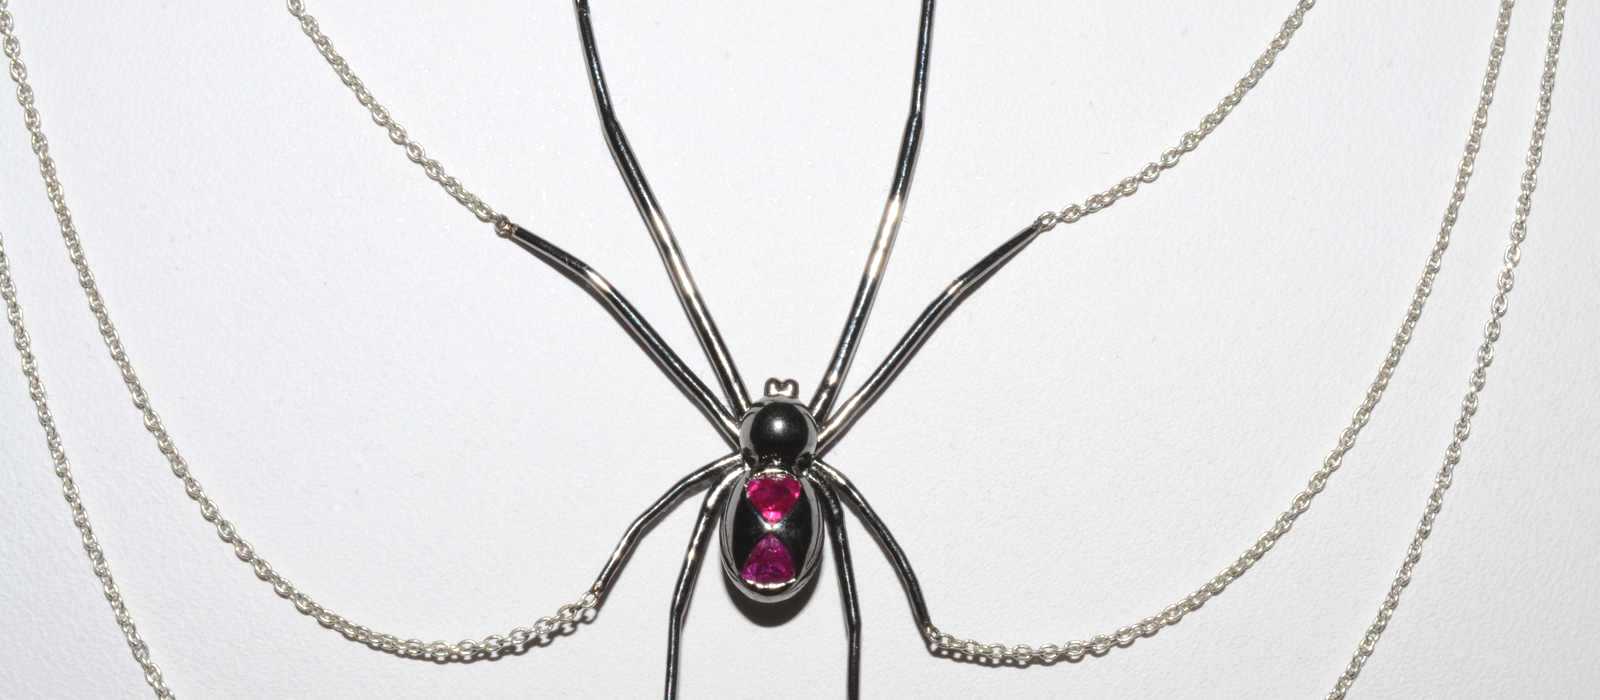 Black Widow Spider Necklace 9860 1600x700 1